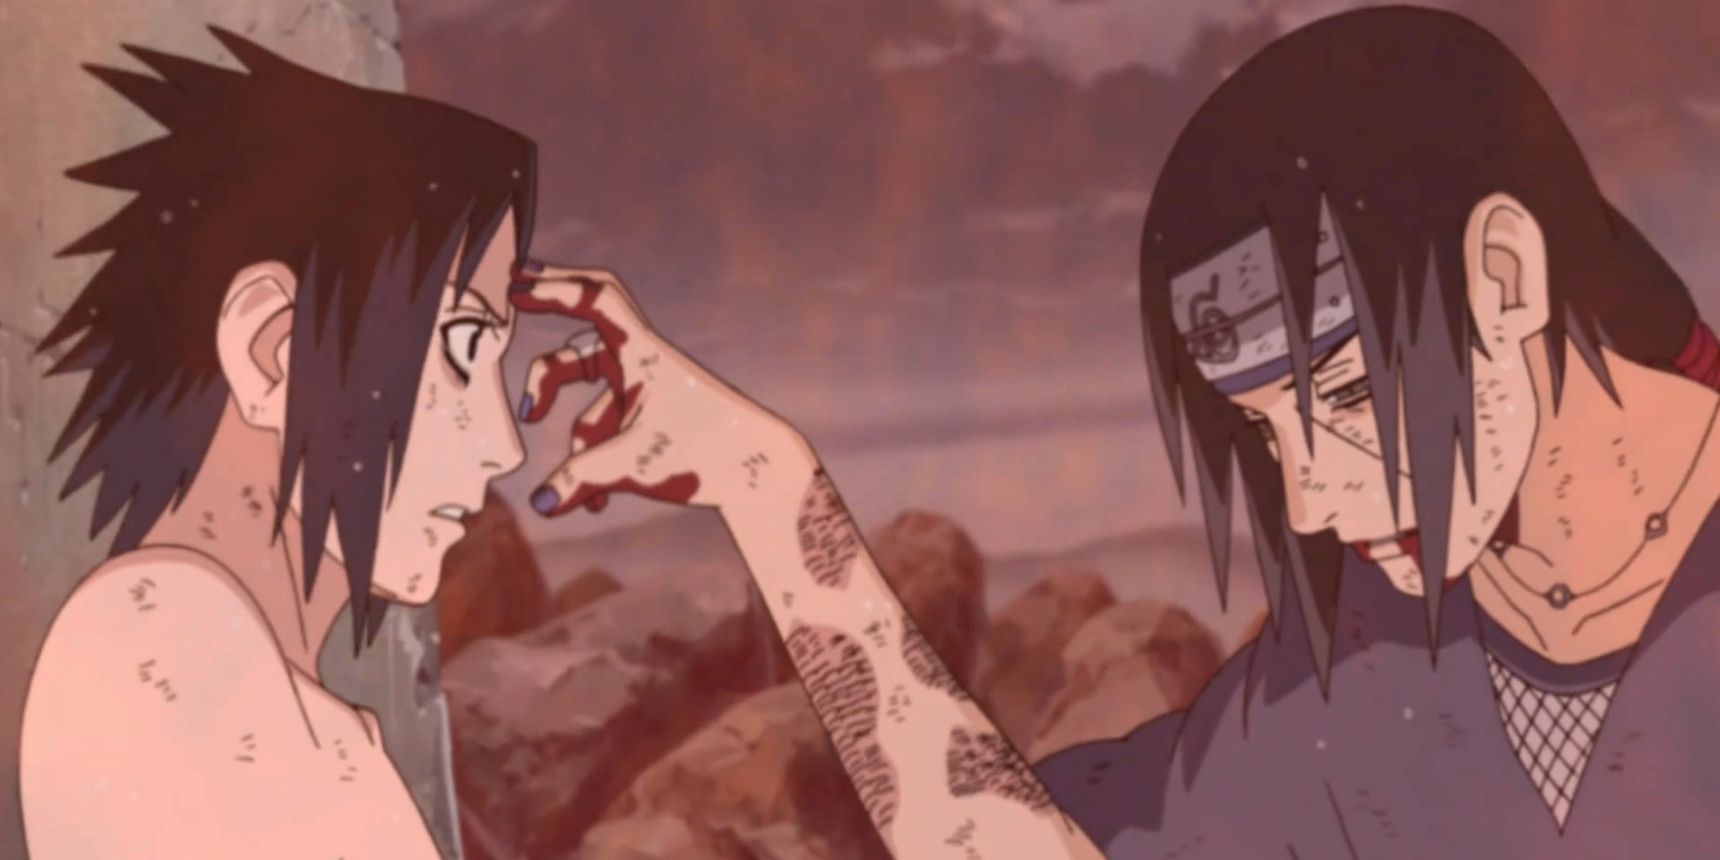 Um Itachi espancado cutuca a testa de Sasuke em Naruto Shippuden The End Episódio 138